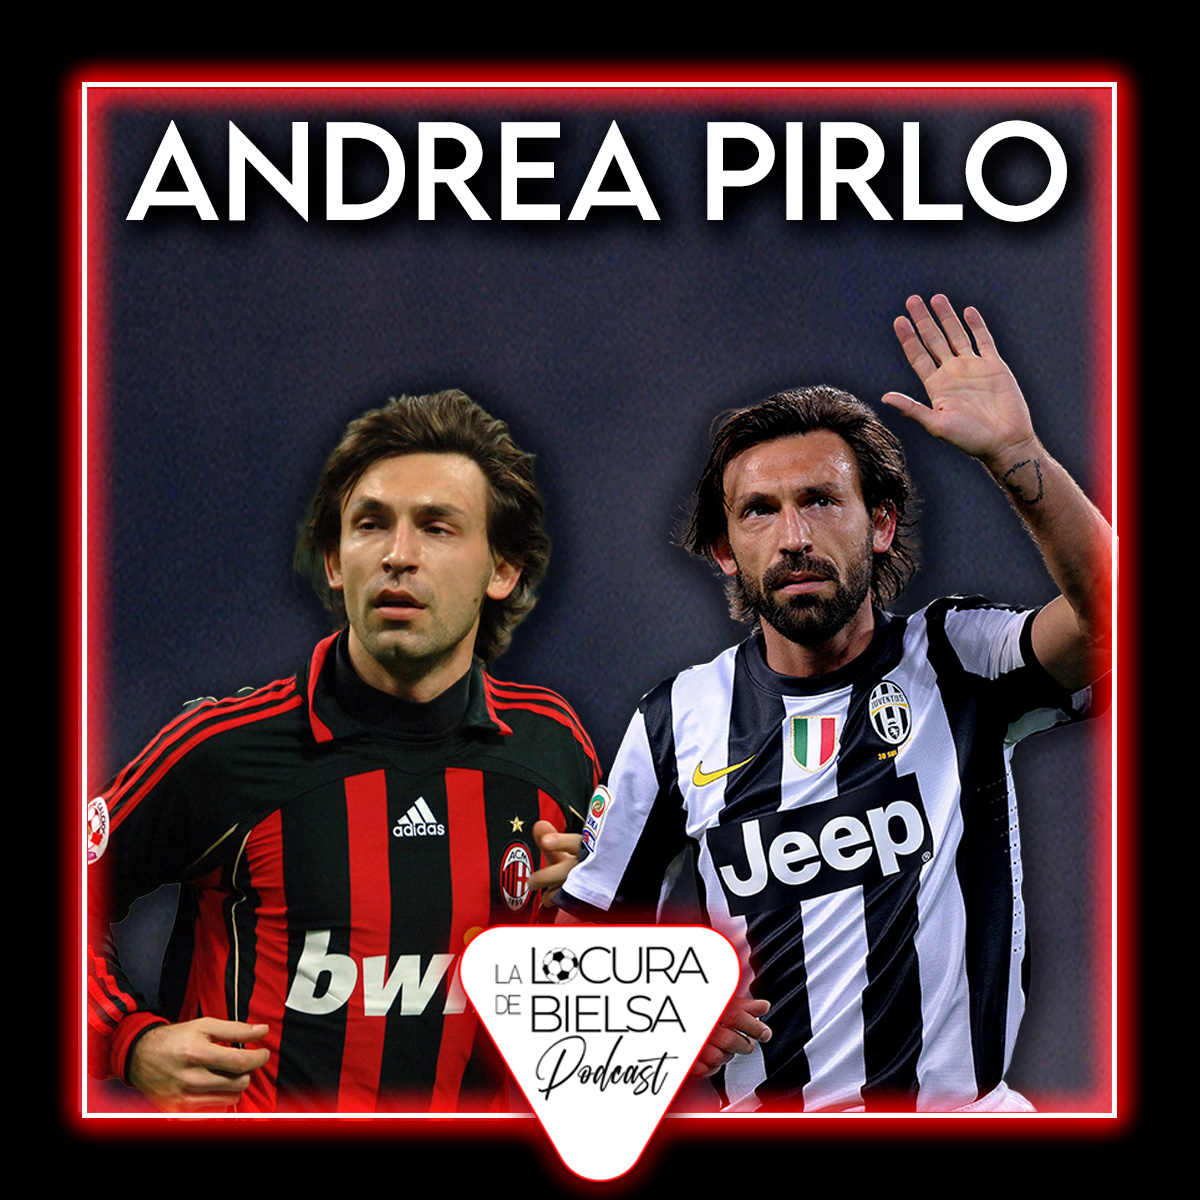 el fichaje de Pirlo por la Juve desde el Milan Locura de Bielsa podcast fútbol